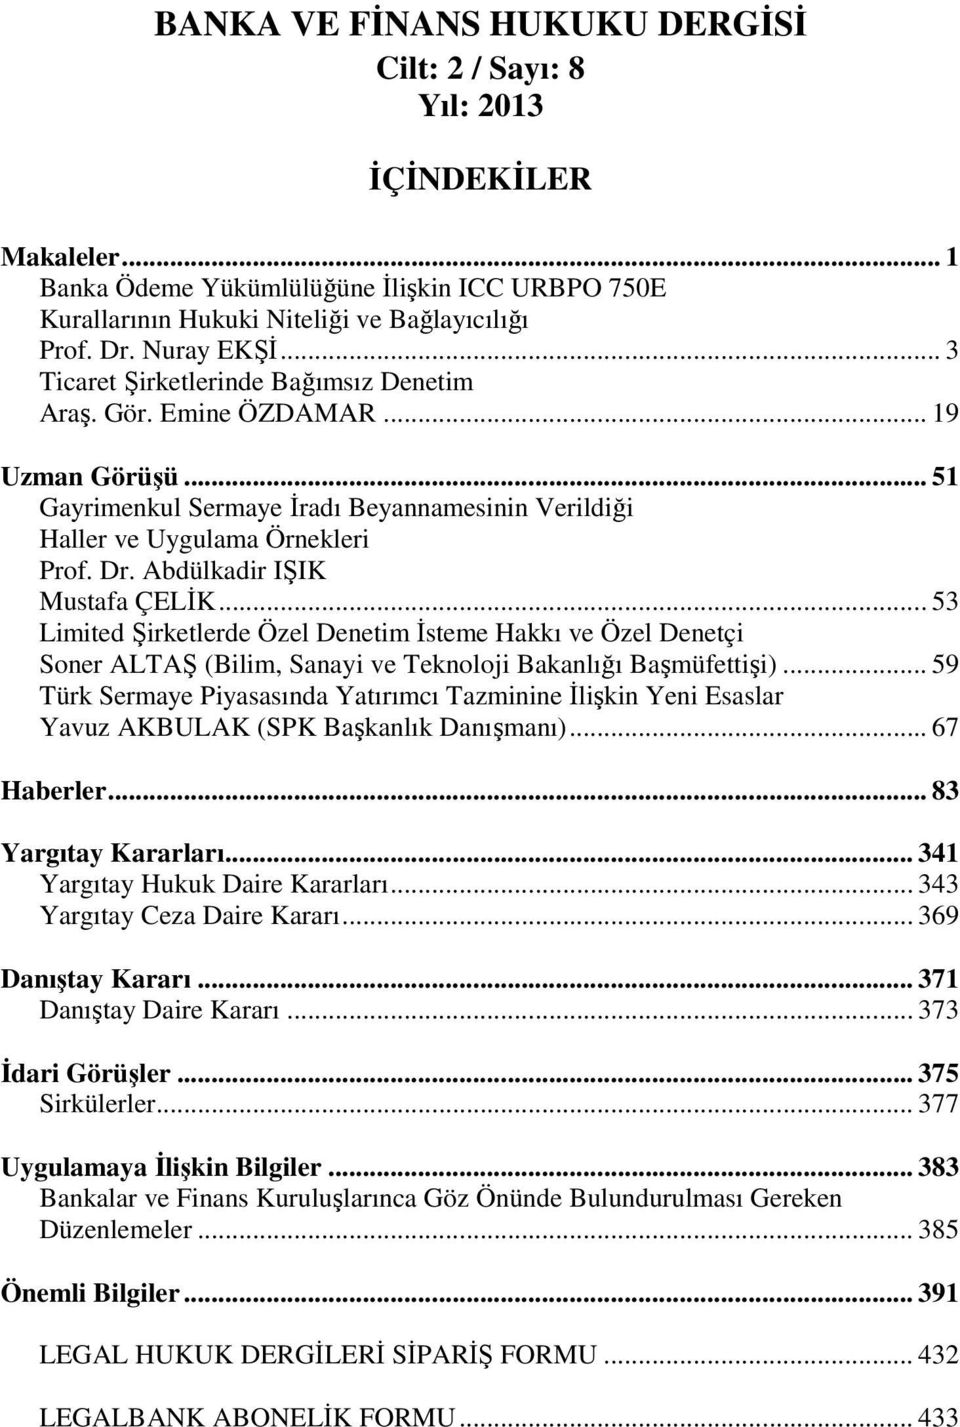 Abdülkadir IŞIK Mustafa ÇELİK... 53 Limited Şirketlerde Özel Denetim İsteme Hakkı ve Özel Denetçi Soner ALTAŞ (Bilim, Sanayi ve Teknoloji Bakanlığı Başmüfettişi).